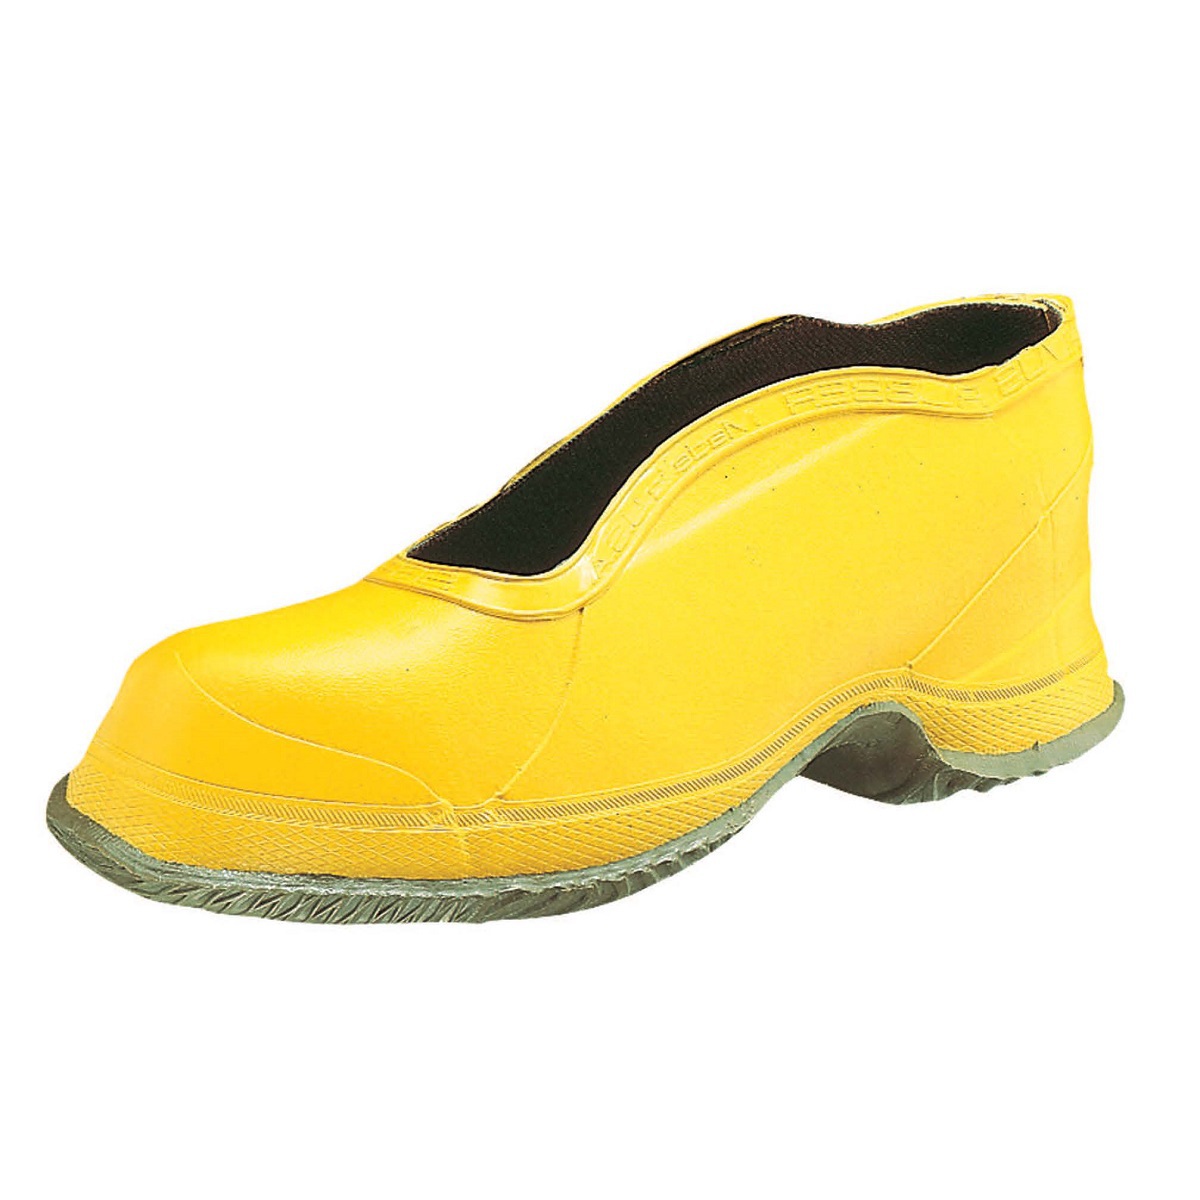 Honeywell Size 15 Salisbury Yellow Rubber Deep Heel Storm Overshoes With Fabric Lining